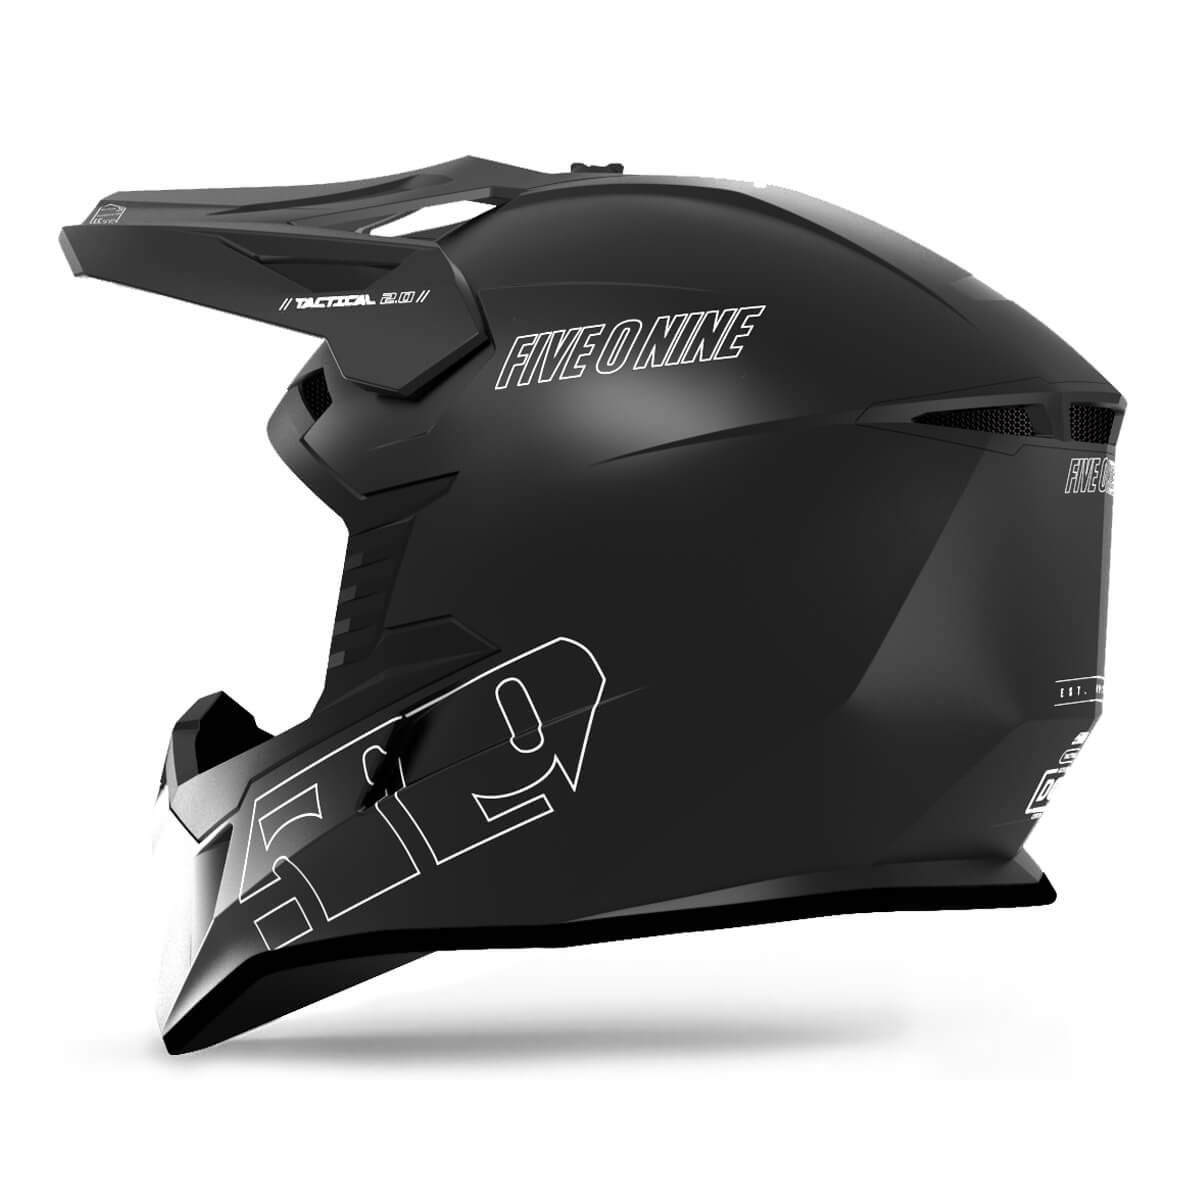 Tactical 2.0 Enduro Helmet with Fidlock